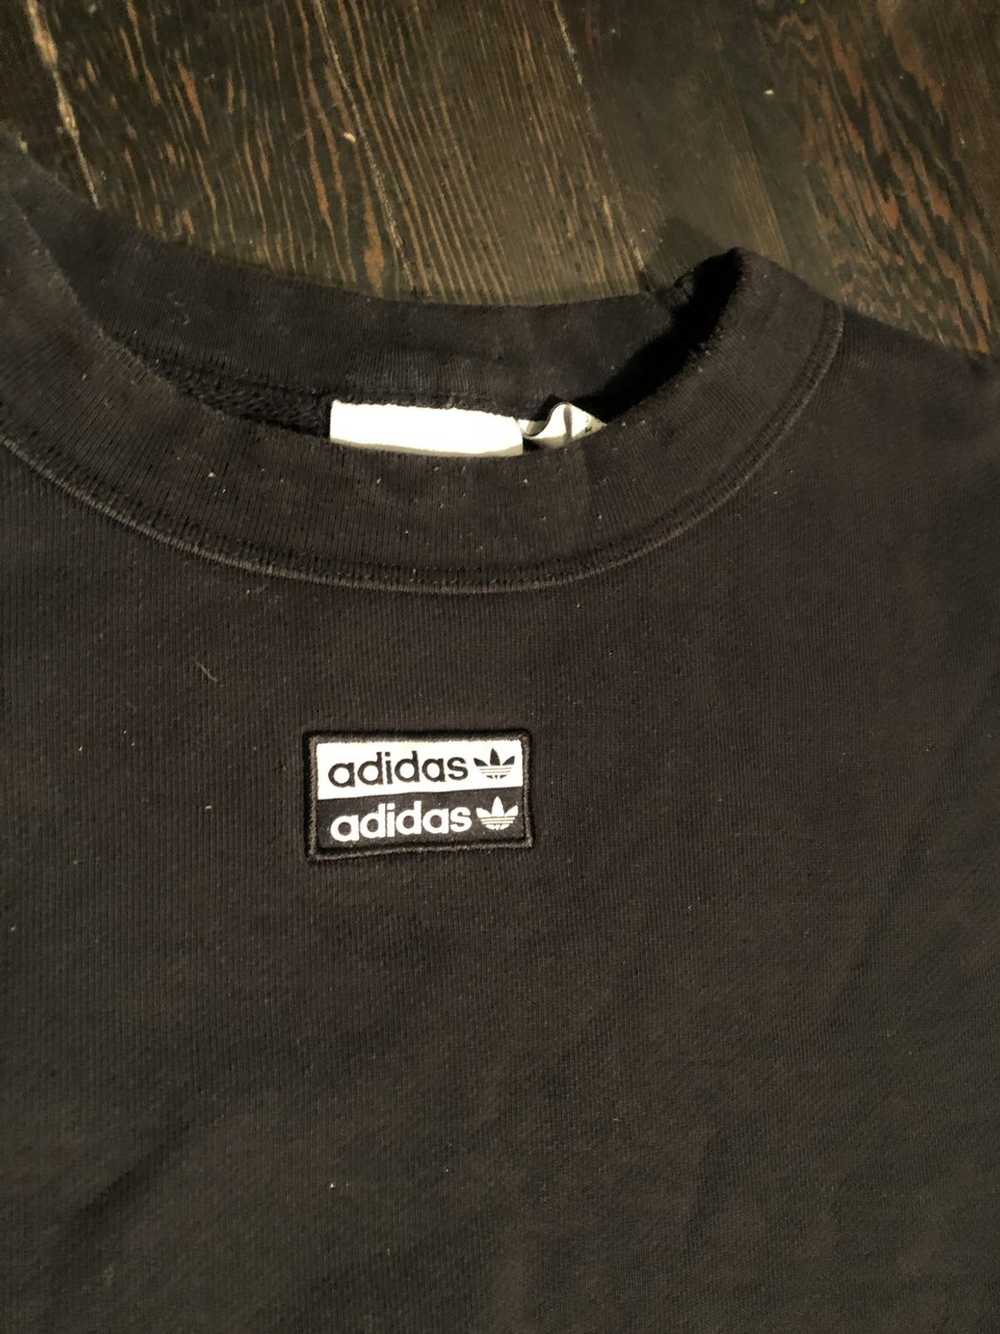 Adidas × Vintage Vintage Adidas Sweatshirt Croppe… - image 2